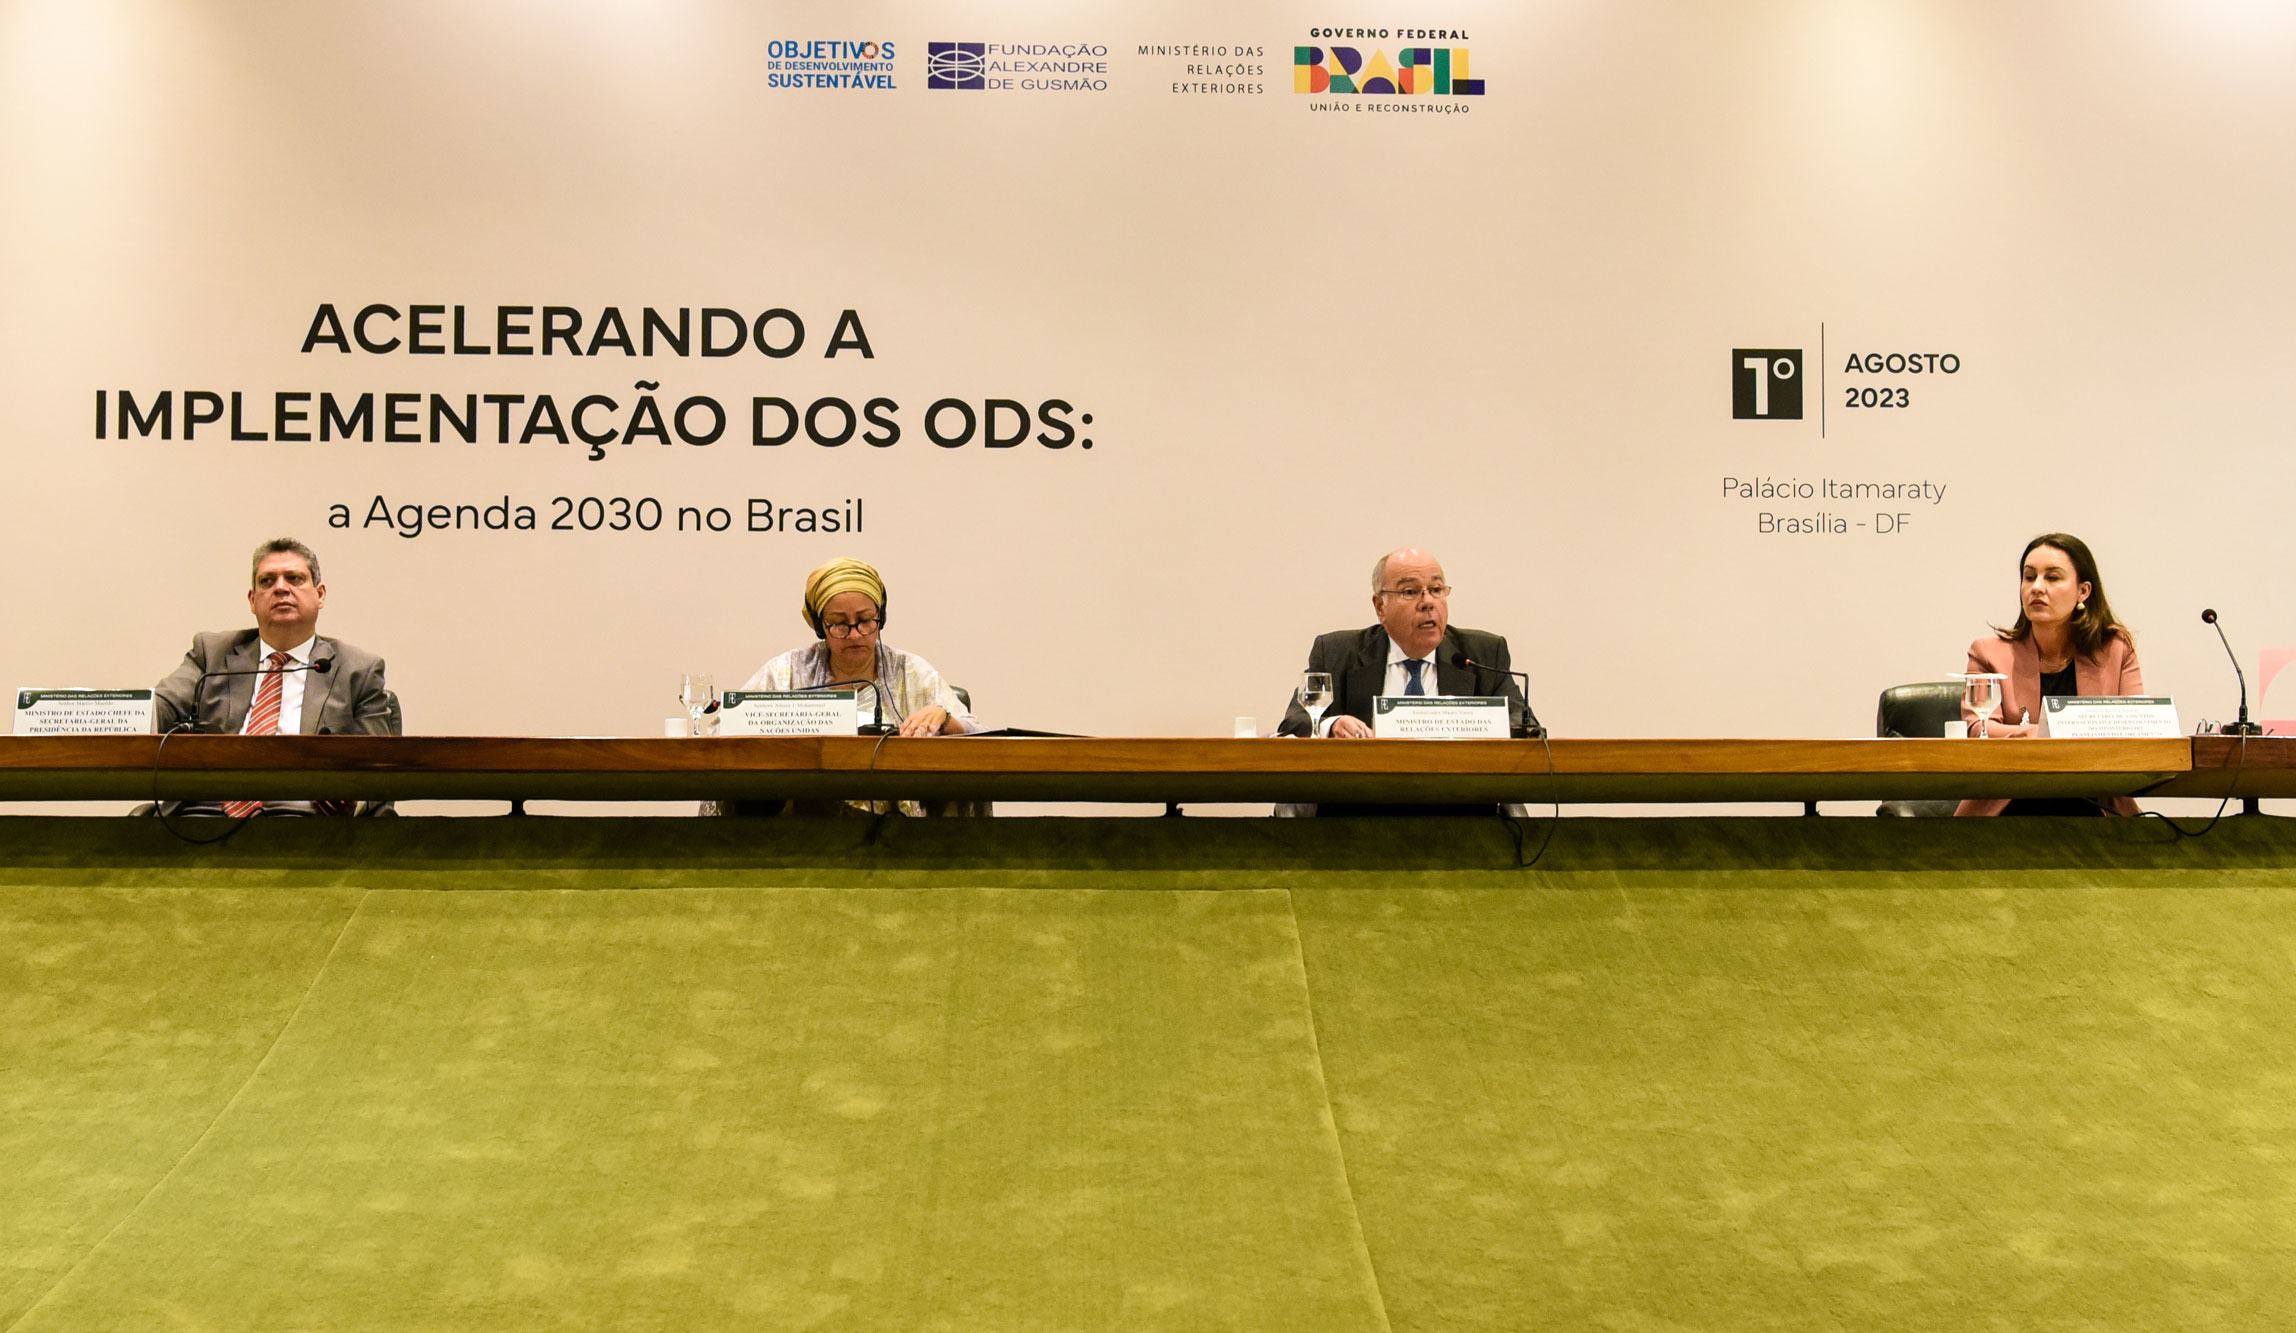 وزير الخارجية ماورو فييرا (الثاني من اليمين) ونائبة الأمين العام للأمم المتحدة أمينة محمد (الثاني من اليسار) ، خلال مناقشة حول تنفيذ أجندة 2030 وأهداف التنمية المستدامة في البرازيل.